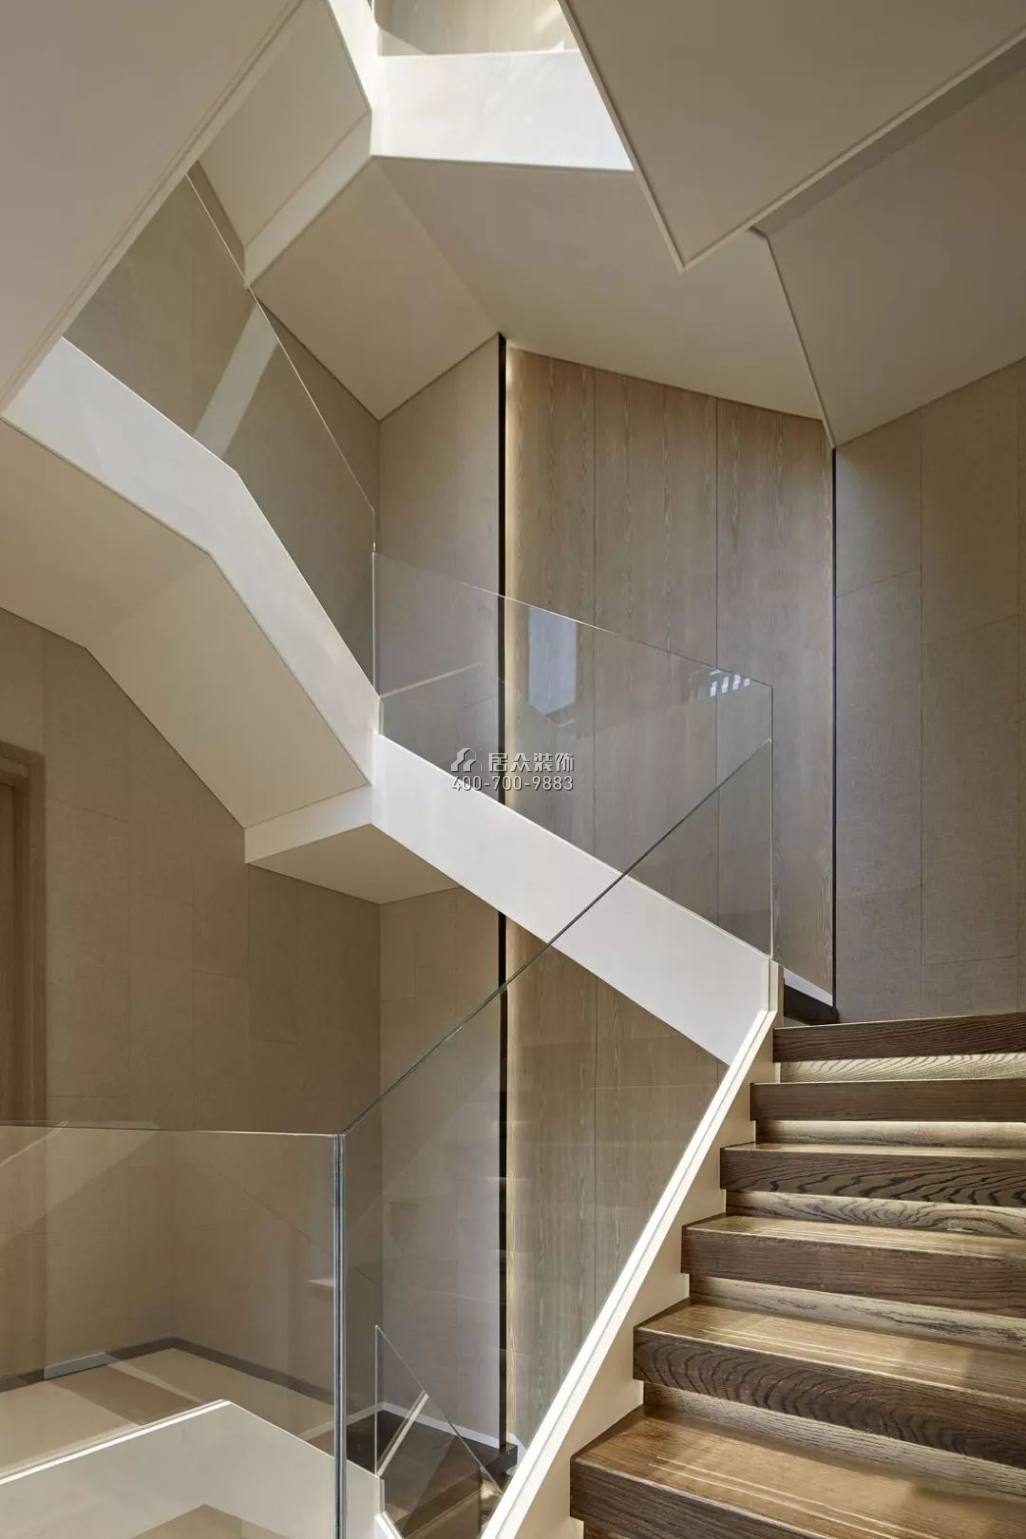 融创凡尔赛花园560平方米中式风格别墅户型楼梯装修效果图